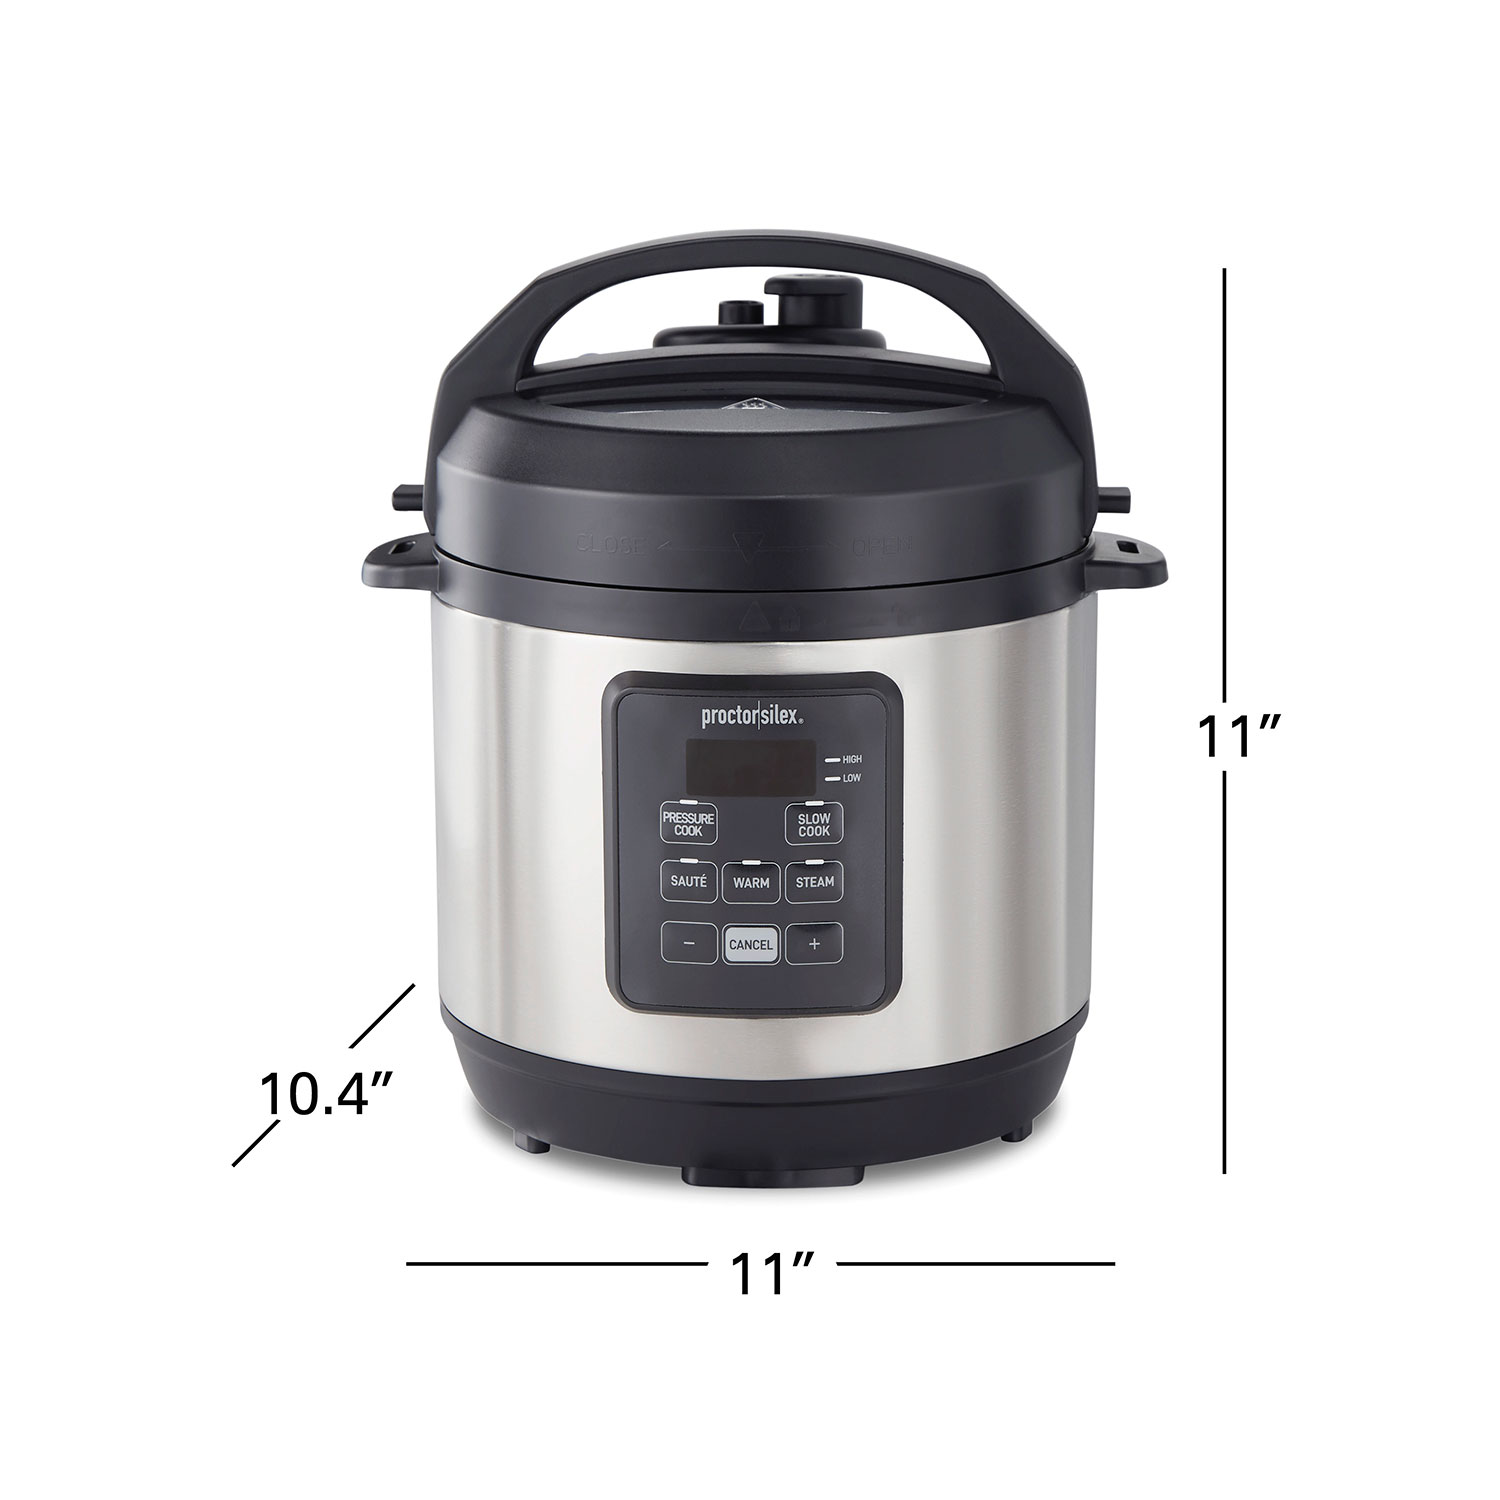 3 Quart Simplicity™ Pressure Cooker - Model 34503 | ProctorSilex.com